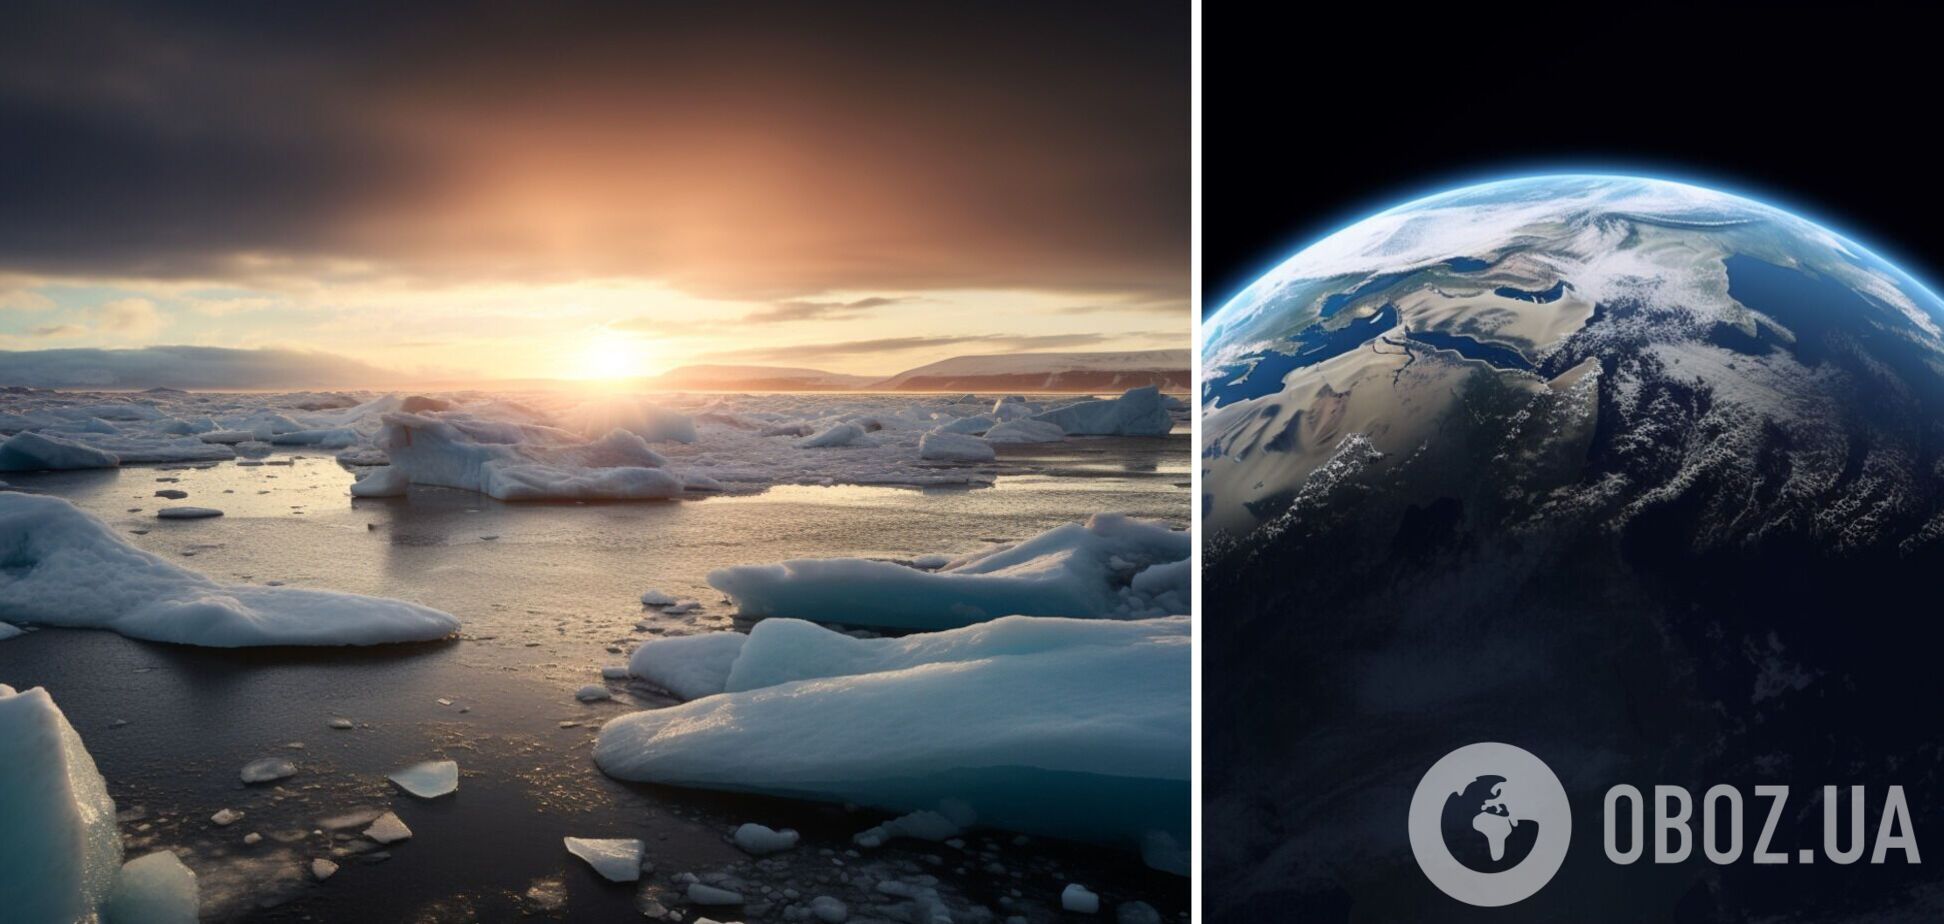 Таяние ледников достигло 'катастрофических' темпов: это может стать приговором для человечества